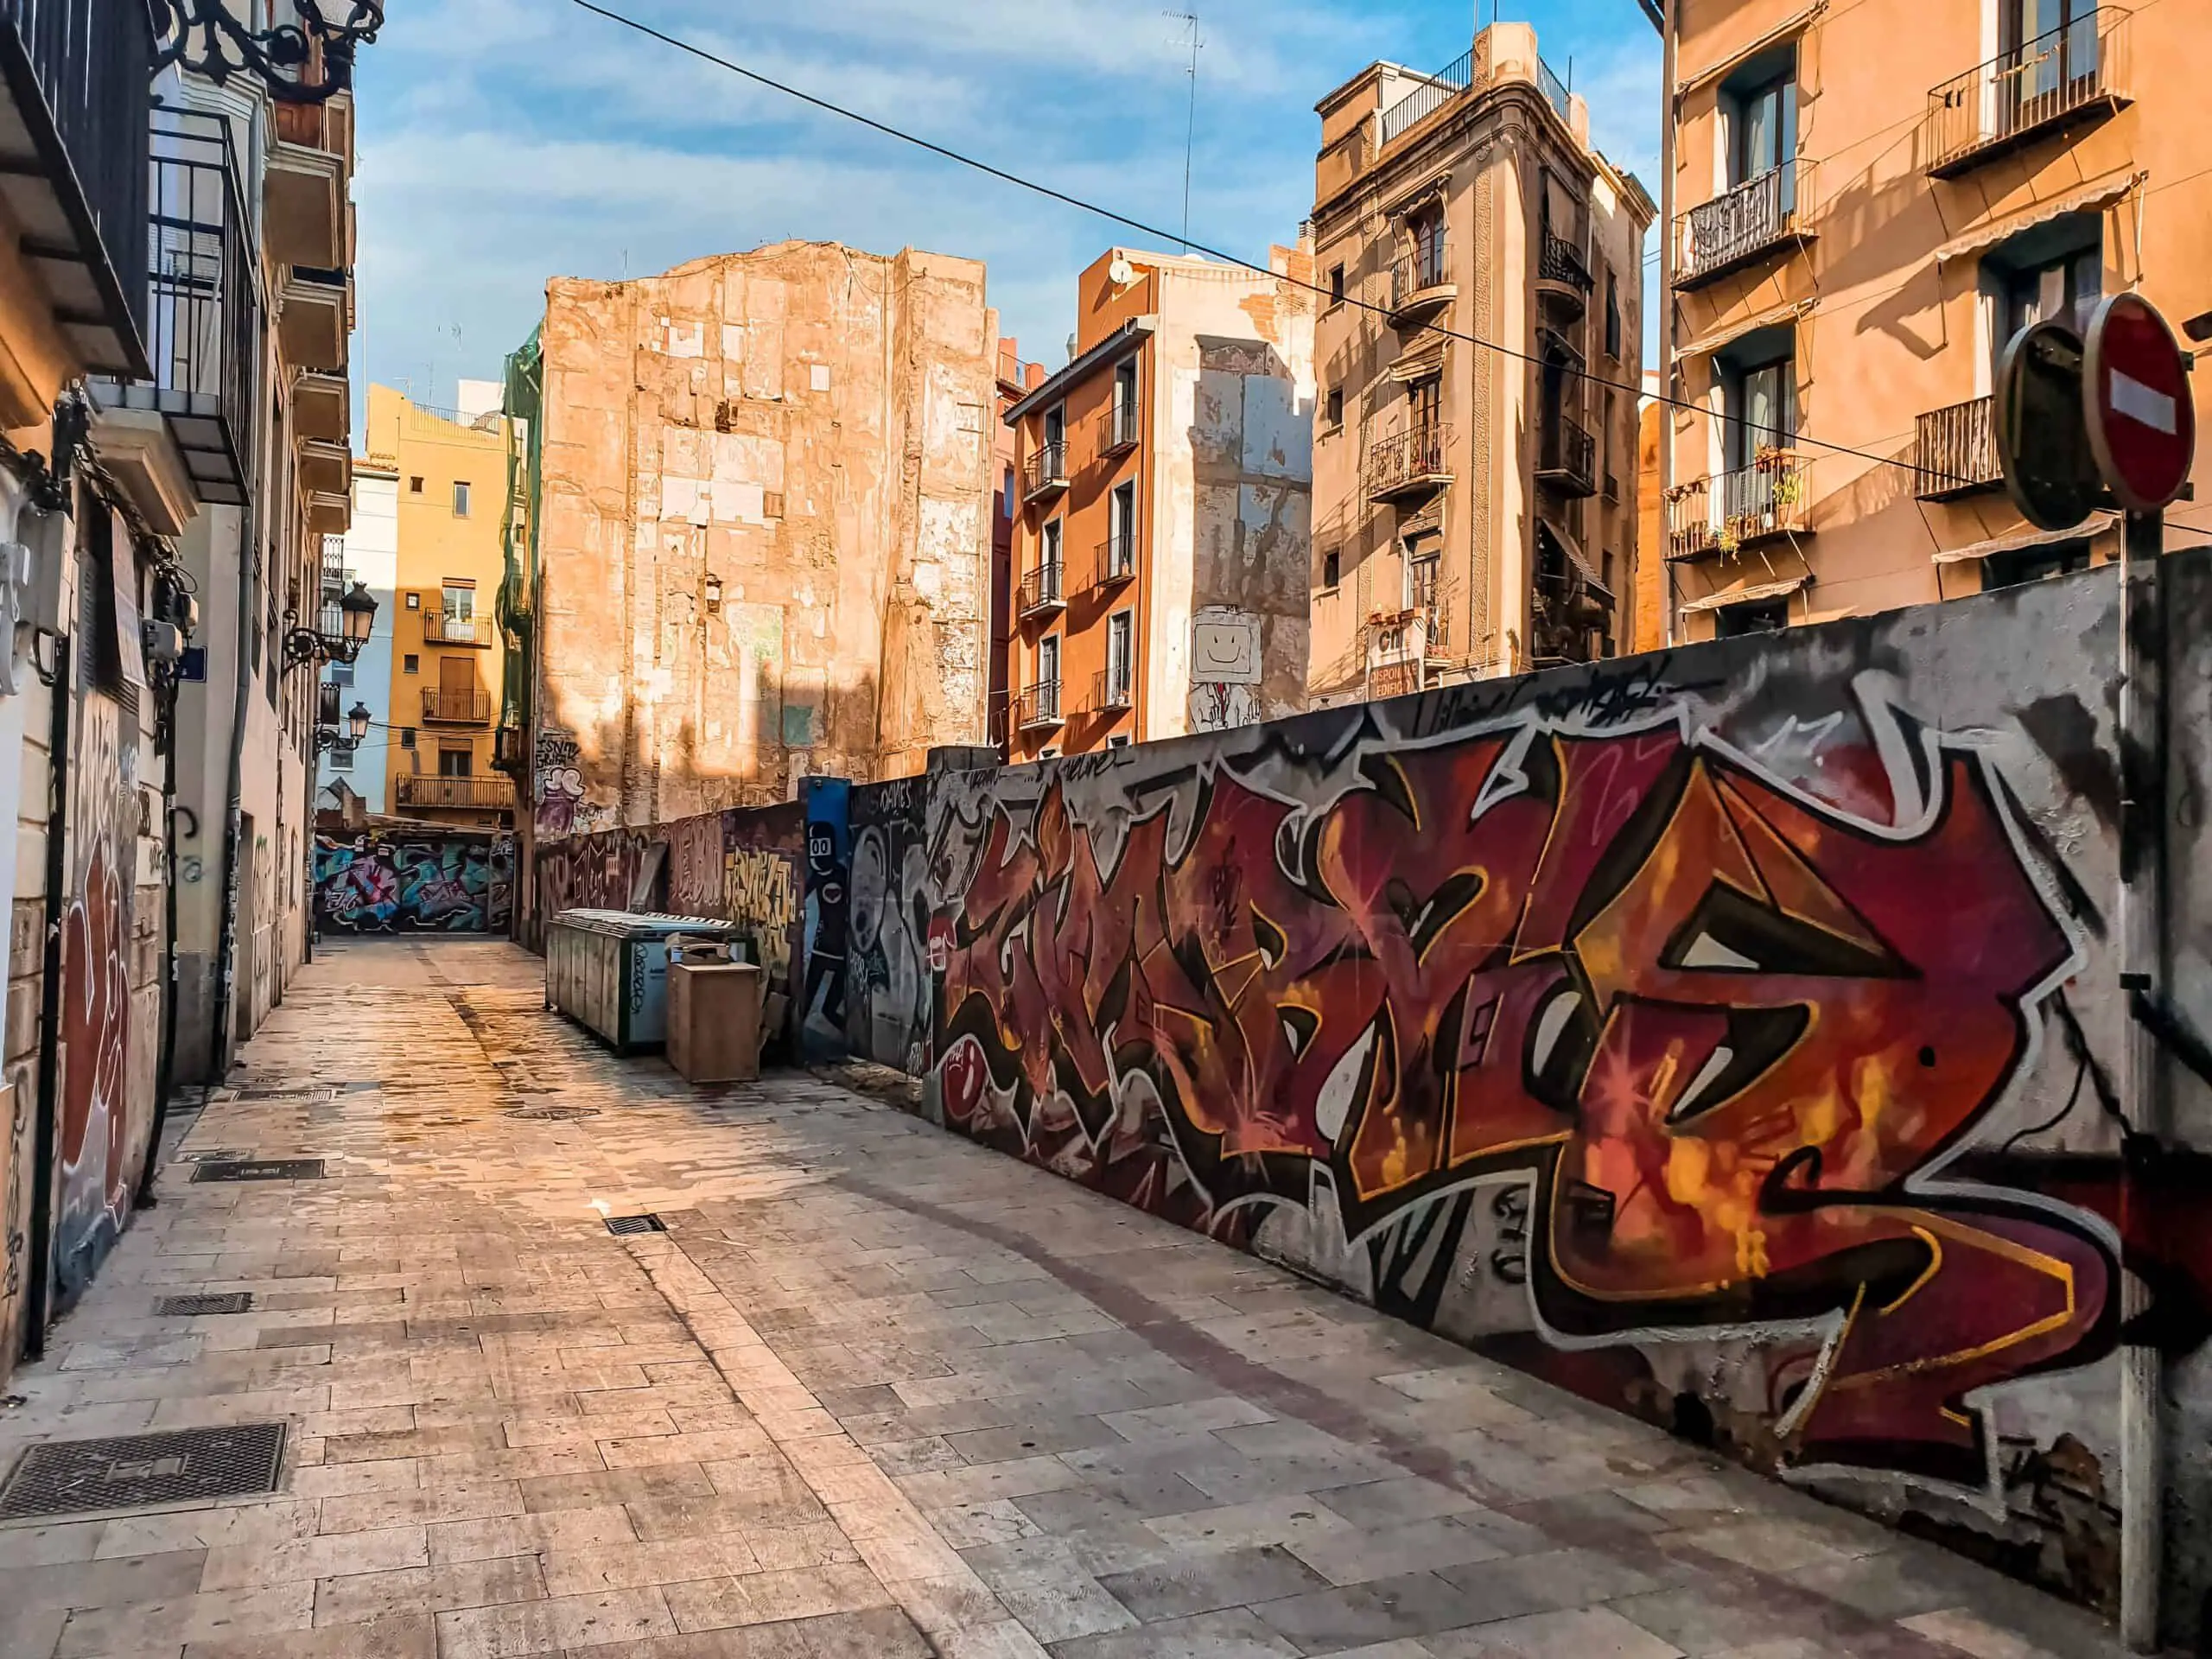 Street art in El Carmen, Valencia